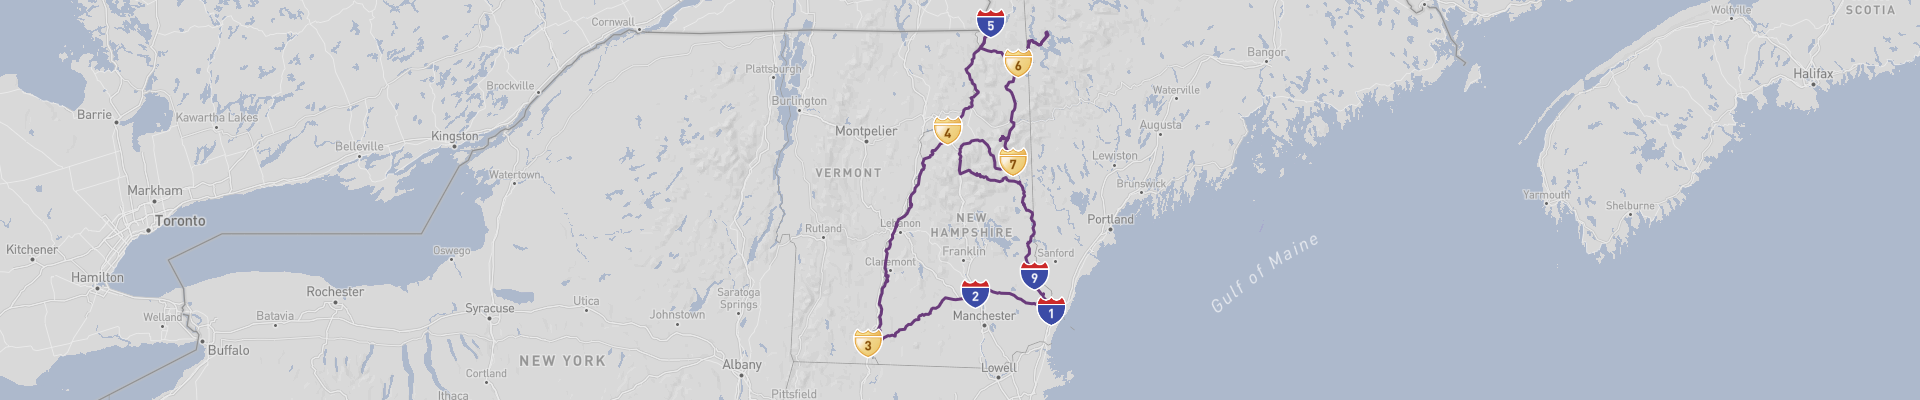 New Hampshire Road Trip